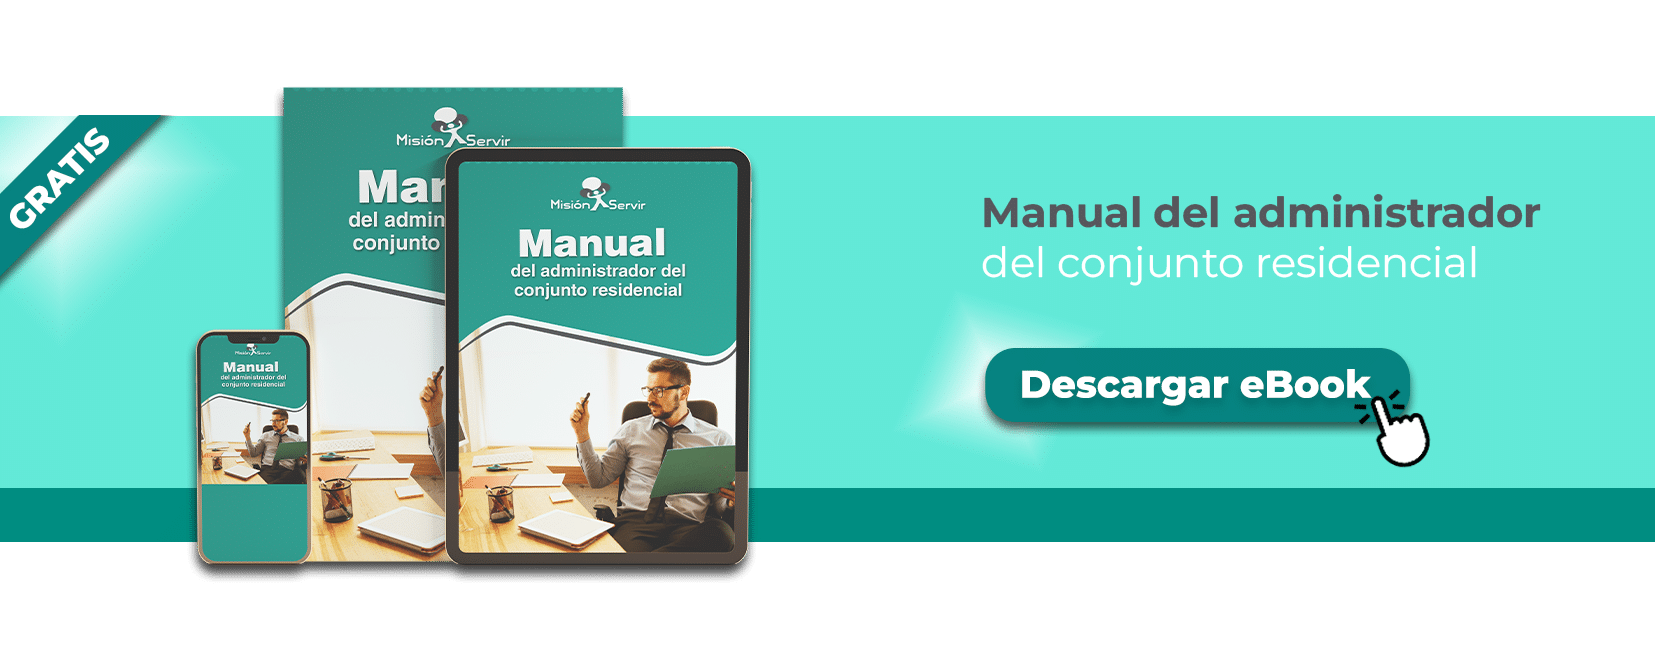 Ebook gratuito manual del administrador conjunto residencial